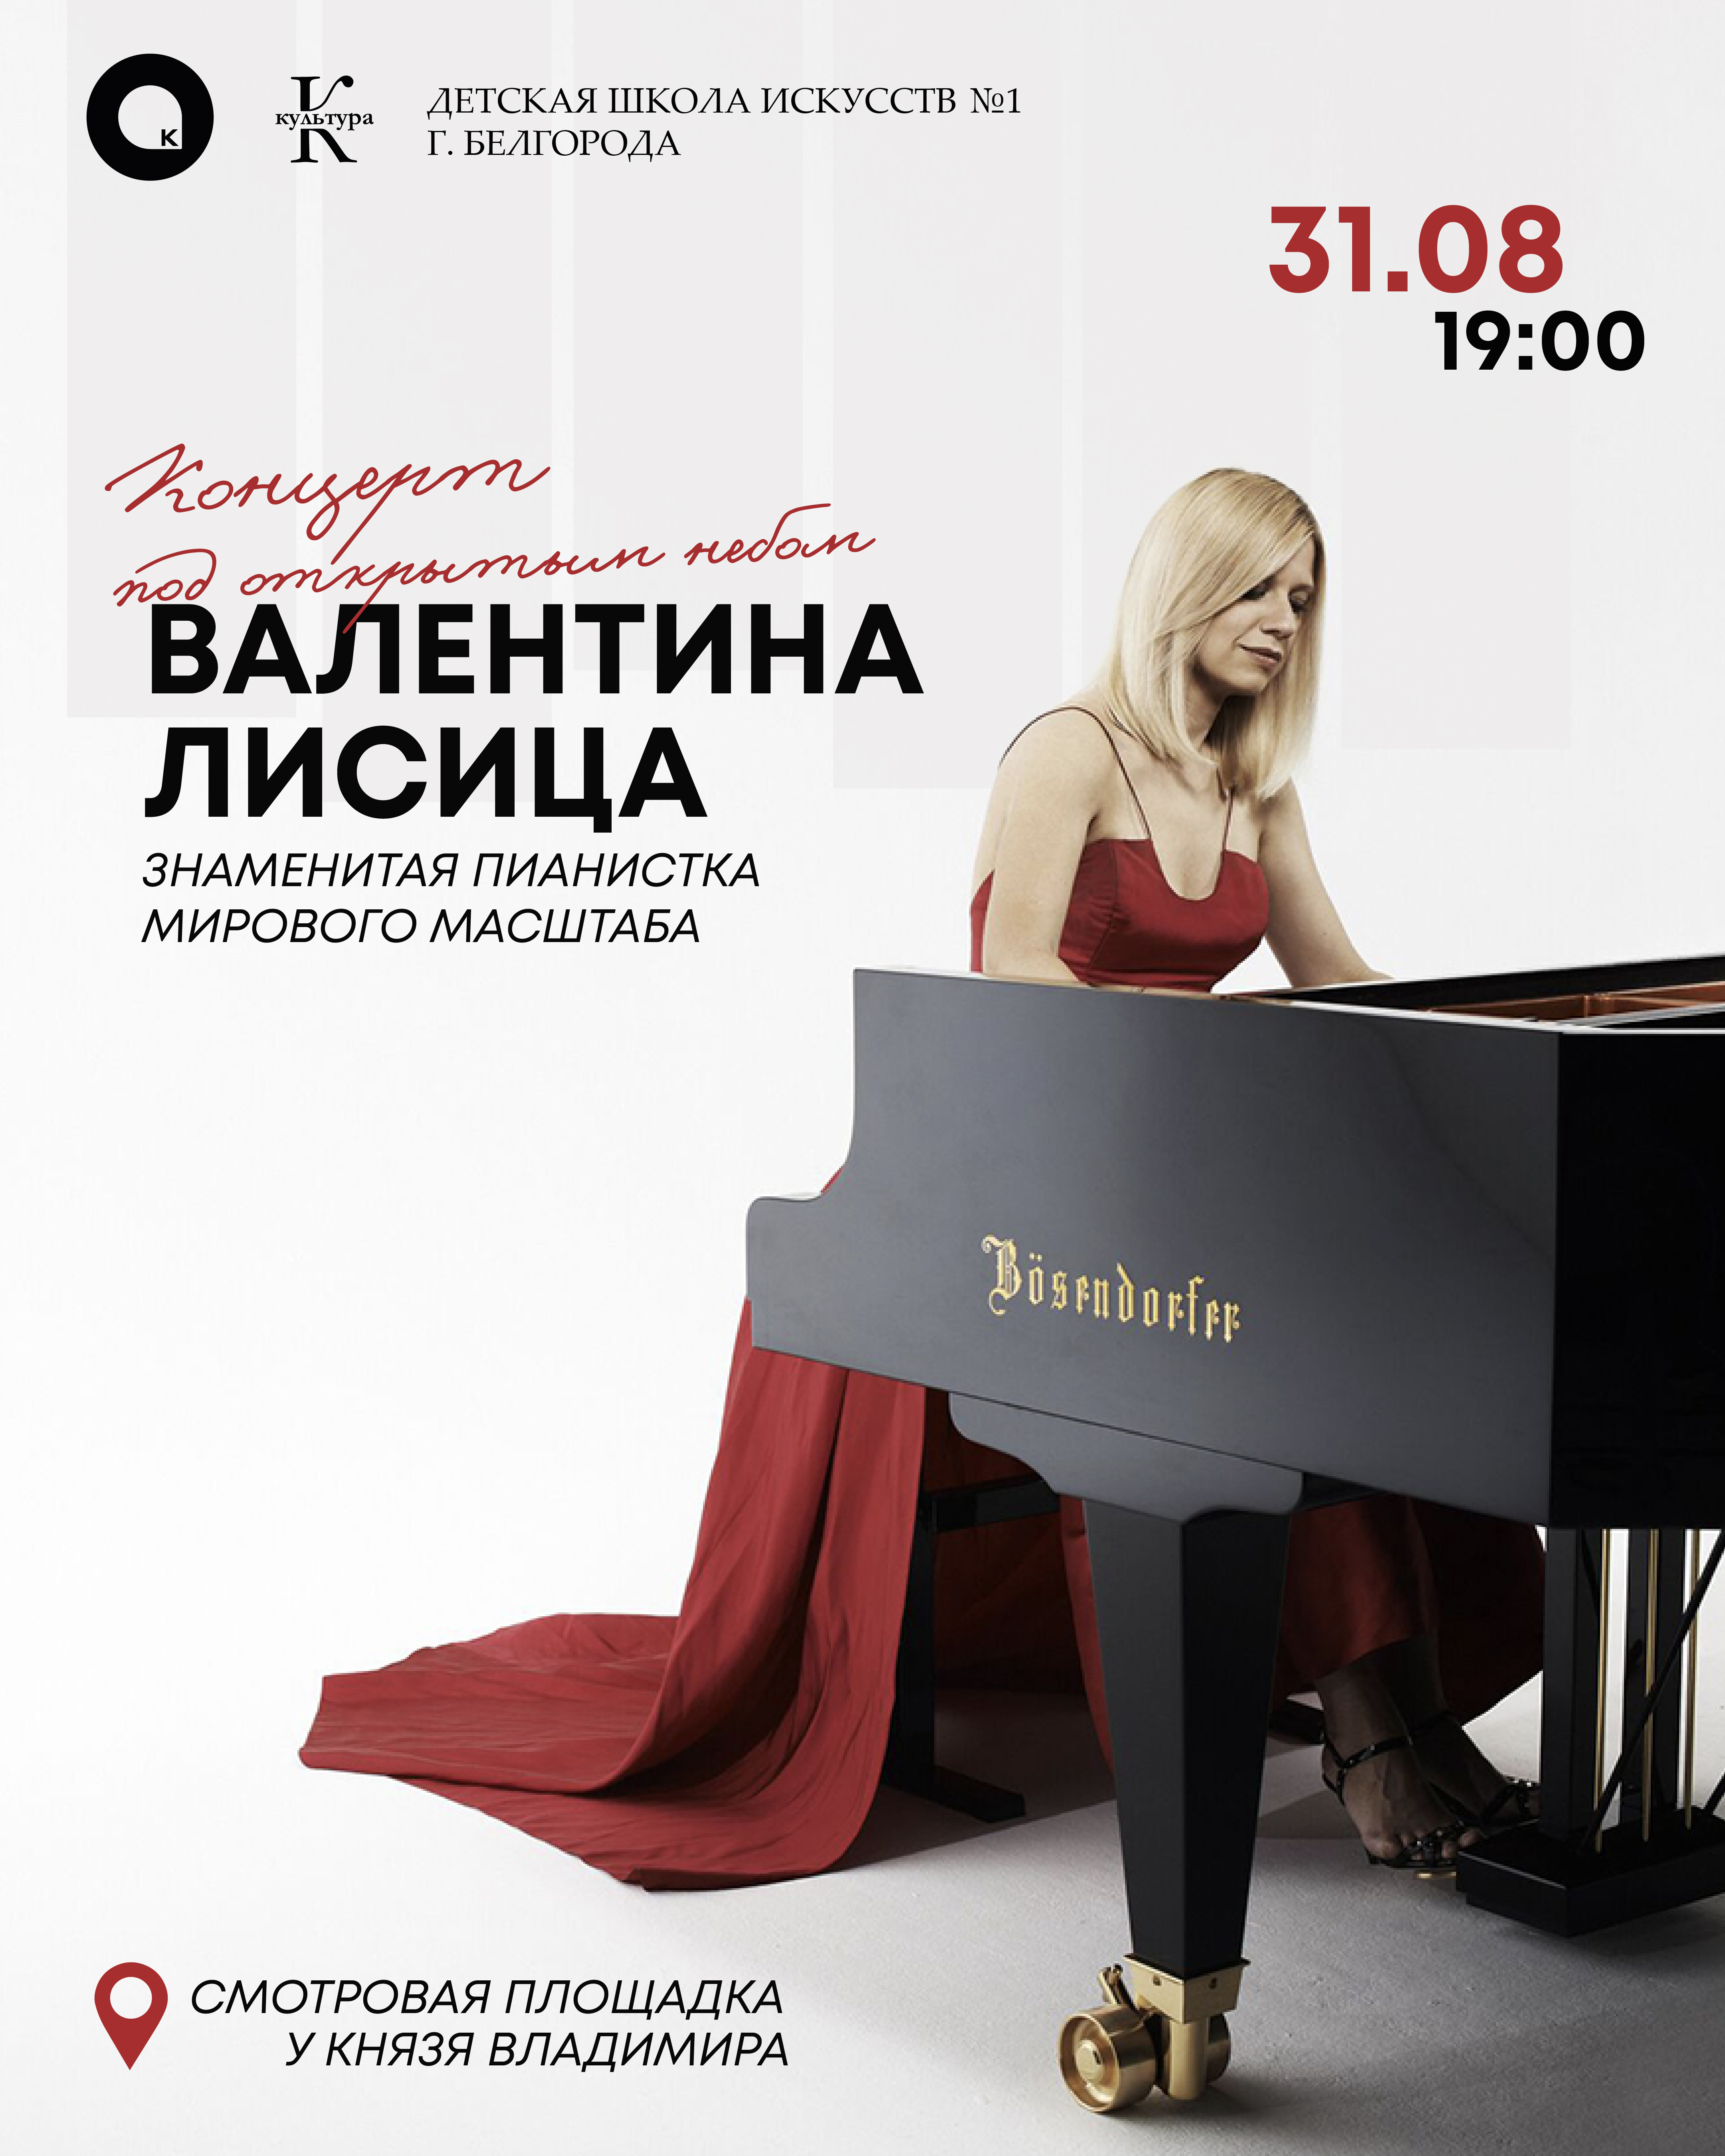 В Белгороде концерт под открытым небом даст пианистка с мировым именем Валентина Лисица.